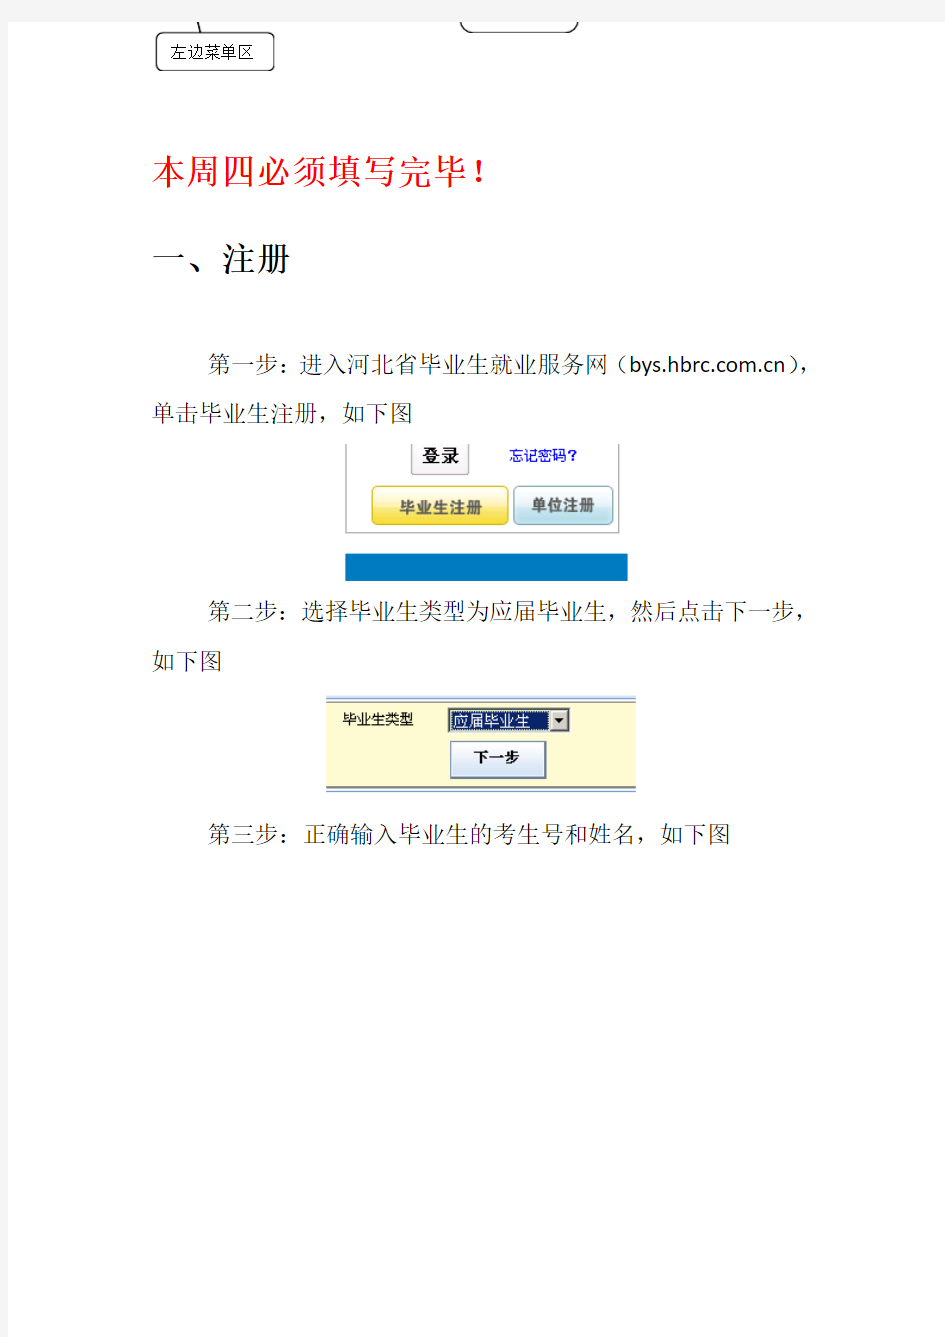 河北省毕业生就业服务平台使用说明书(毕业生部分)